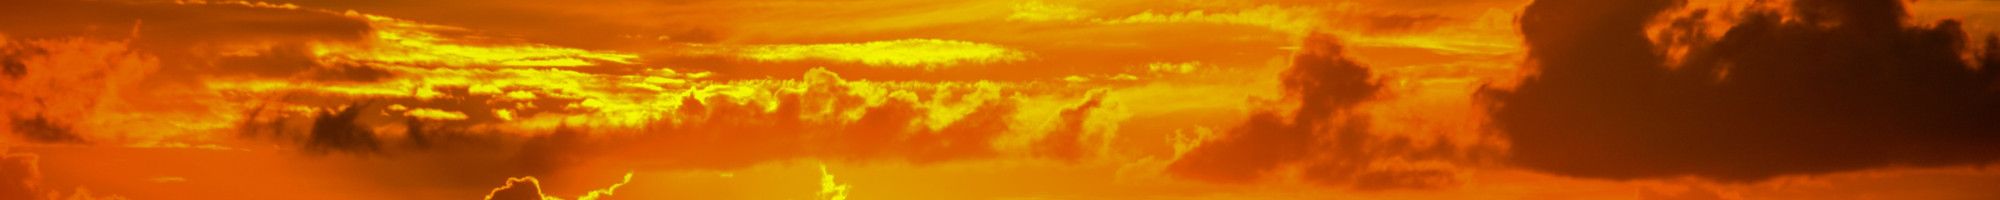 image of orange sky